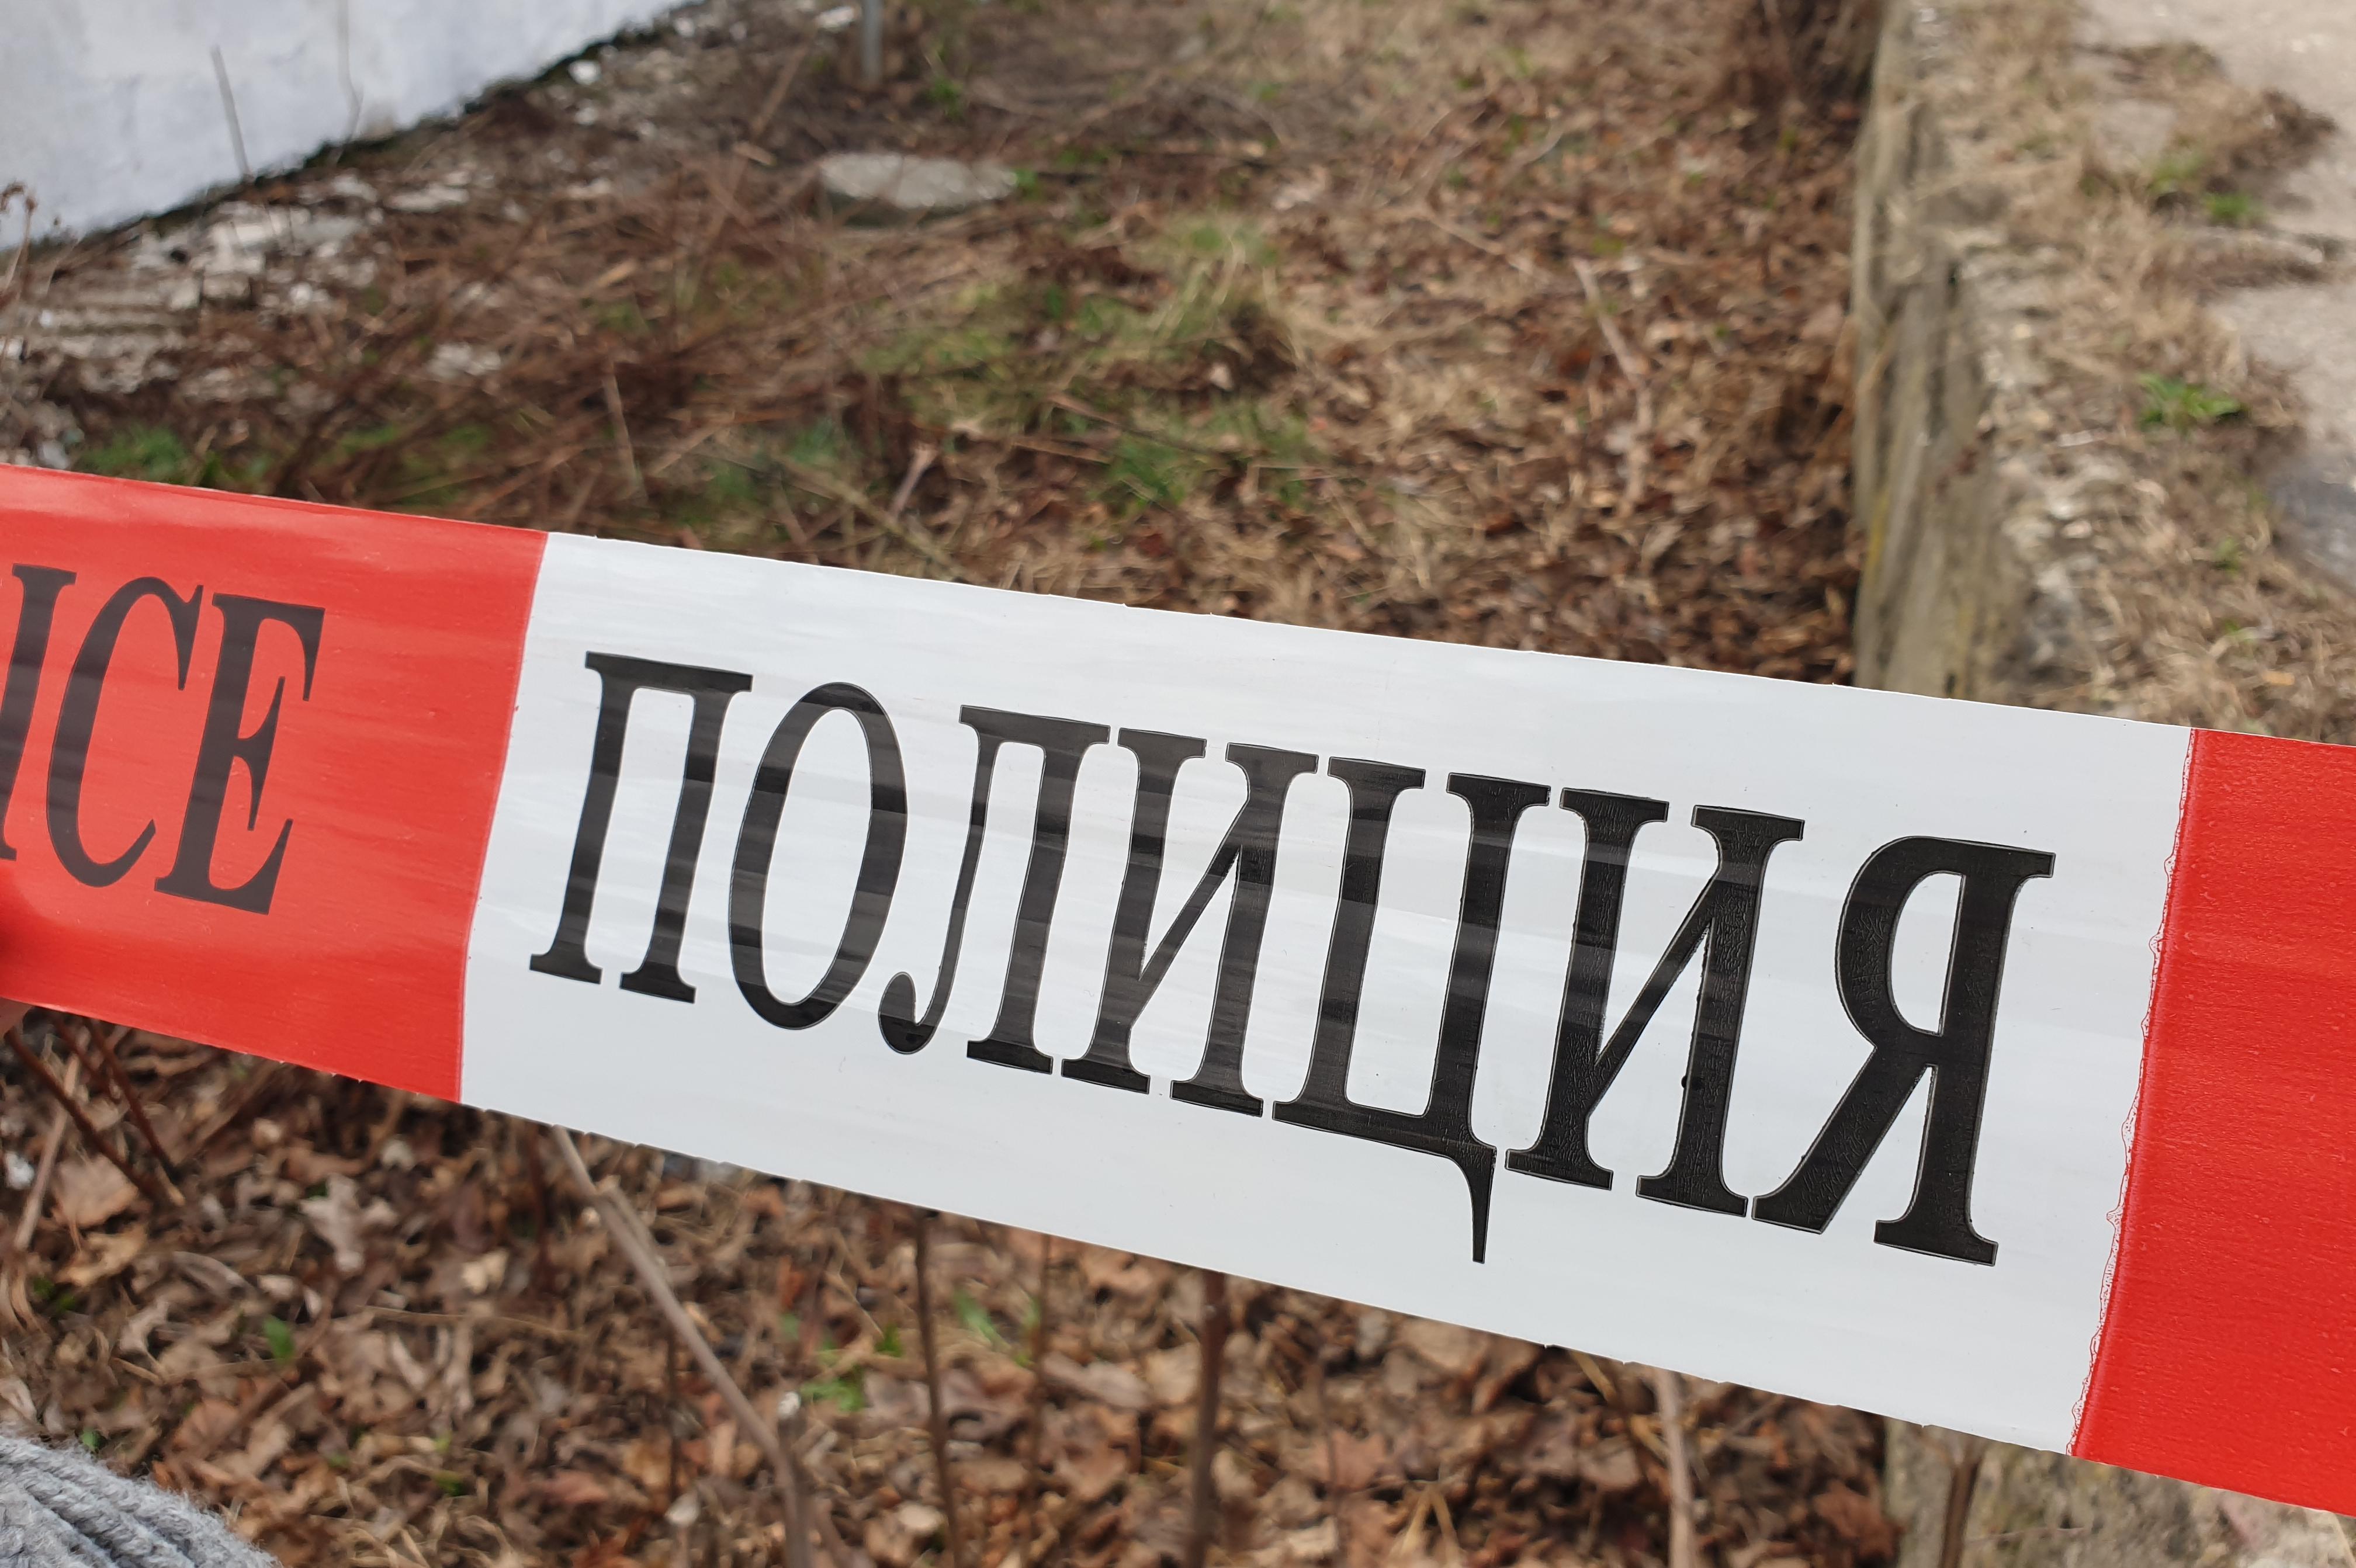 В Костинброд: Водач с 3.02 промила алкохол попадна в ареста